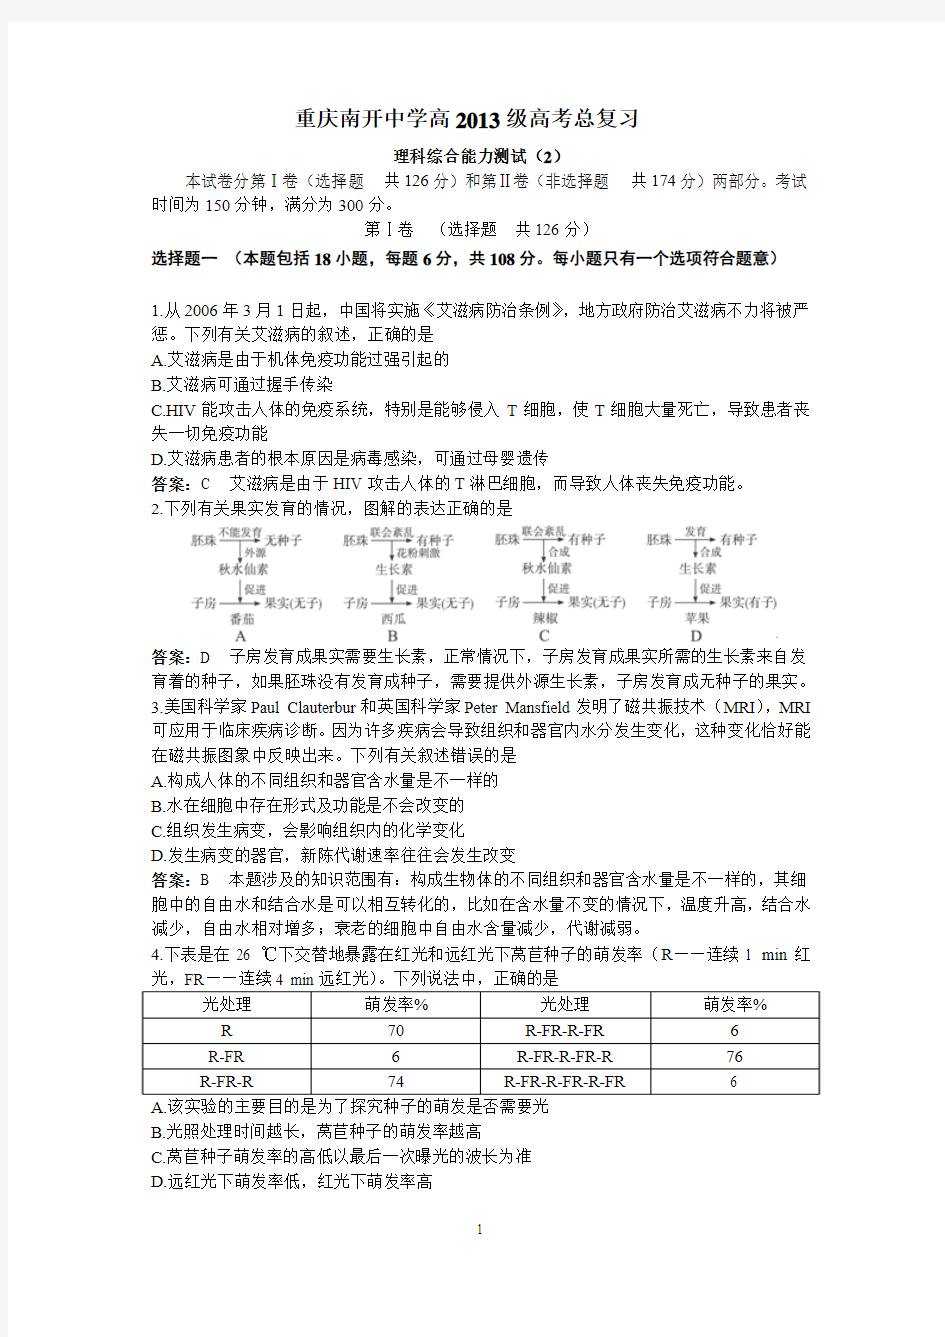 重庆南开中学高2013级高考复习理综测试题(冲刺卷)(2)(附答案)